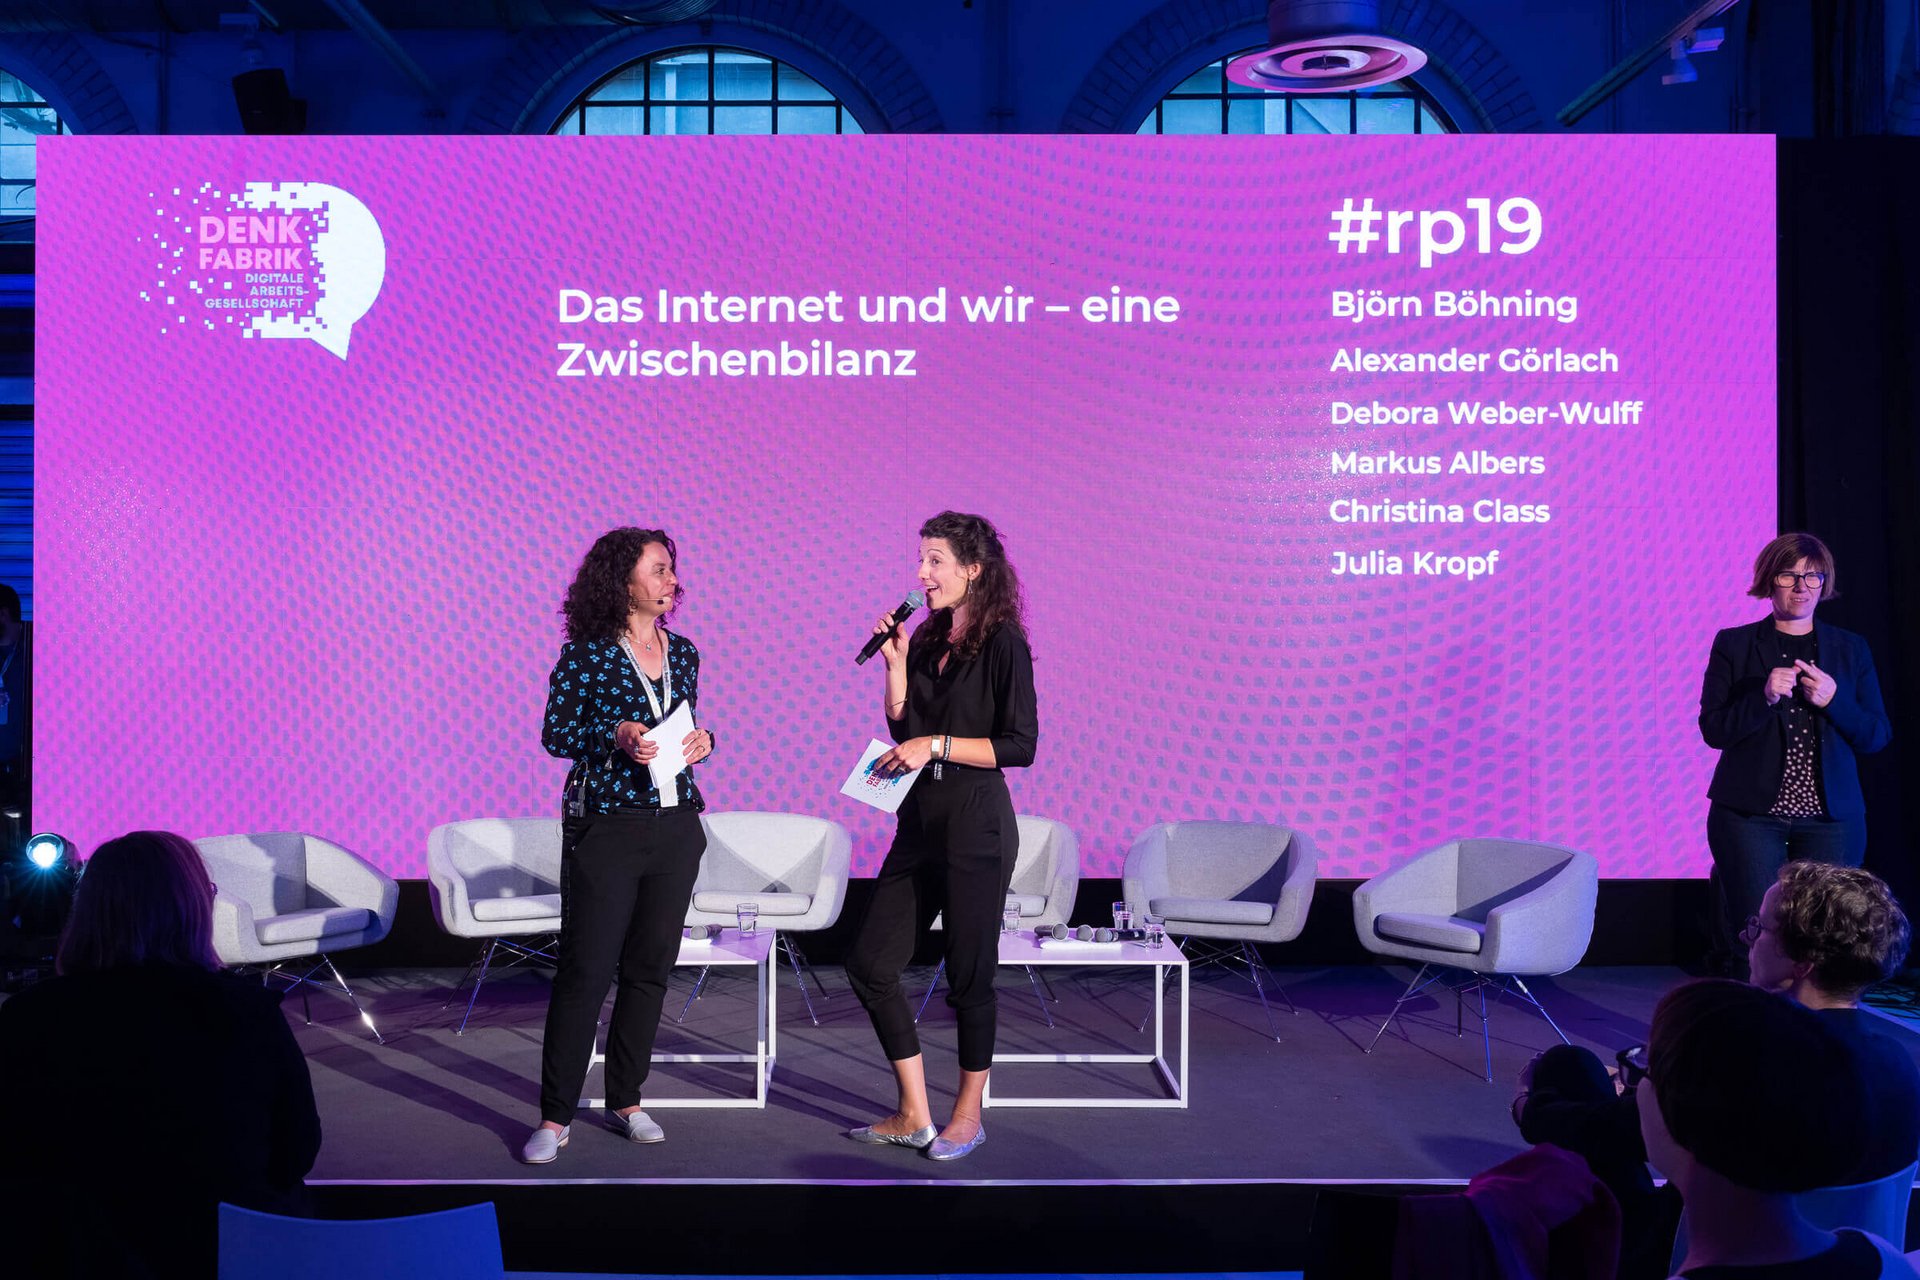 Zwei Frauen mit Mikrofonen und Karten in der Hand stehen auf einer Bühne vor einer magentafarbenen Rückwand mit dem Titel Das Internet und wir - eine Zwischenbilanz.